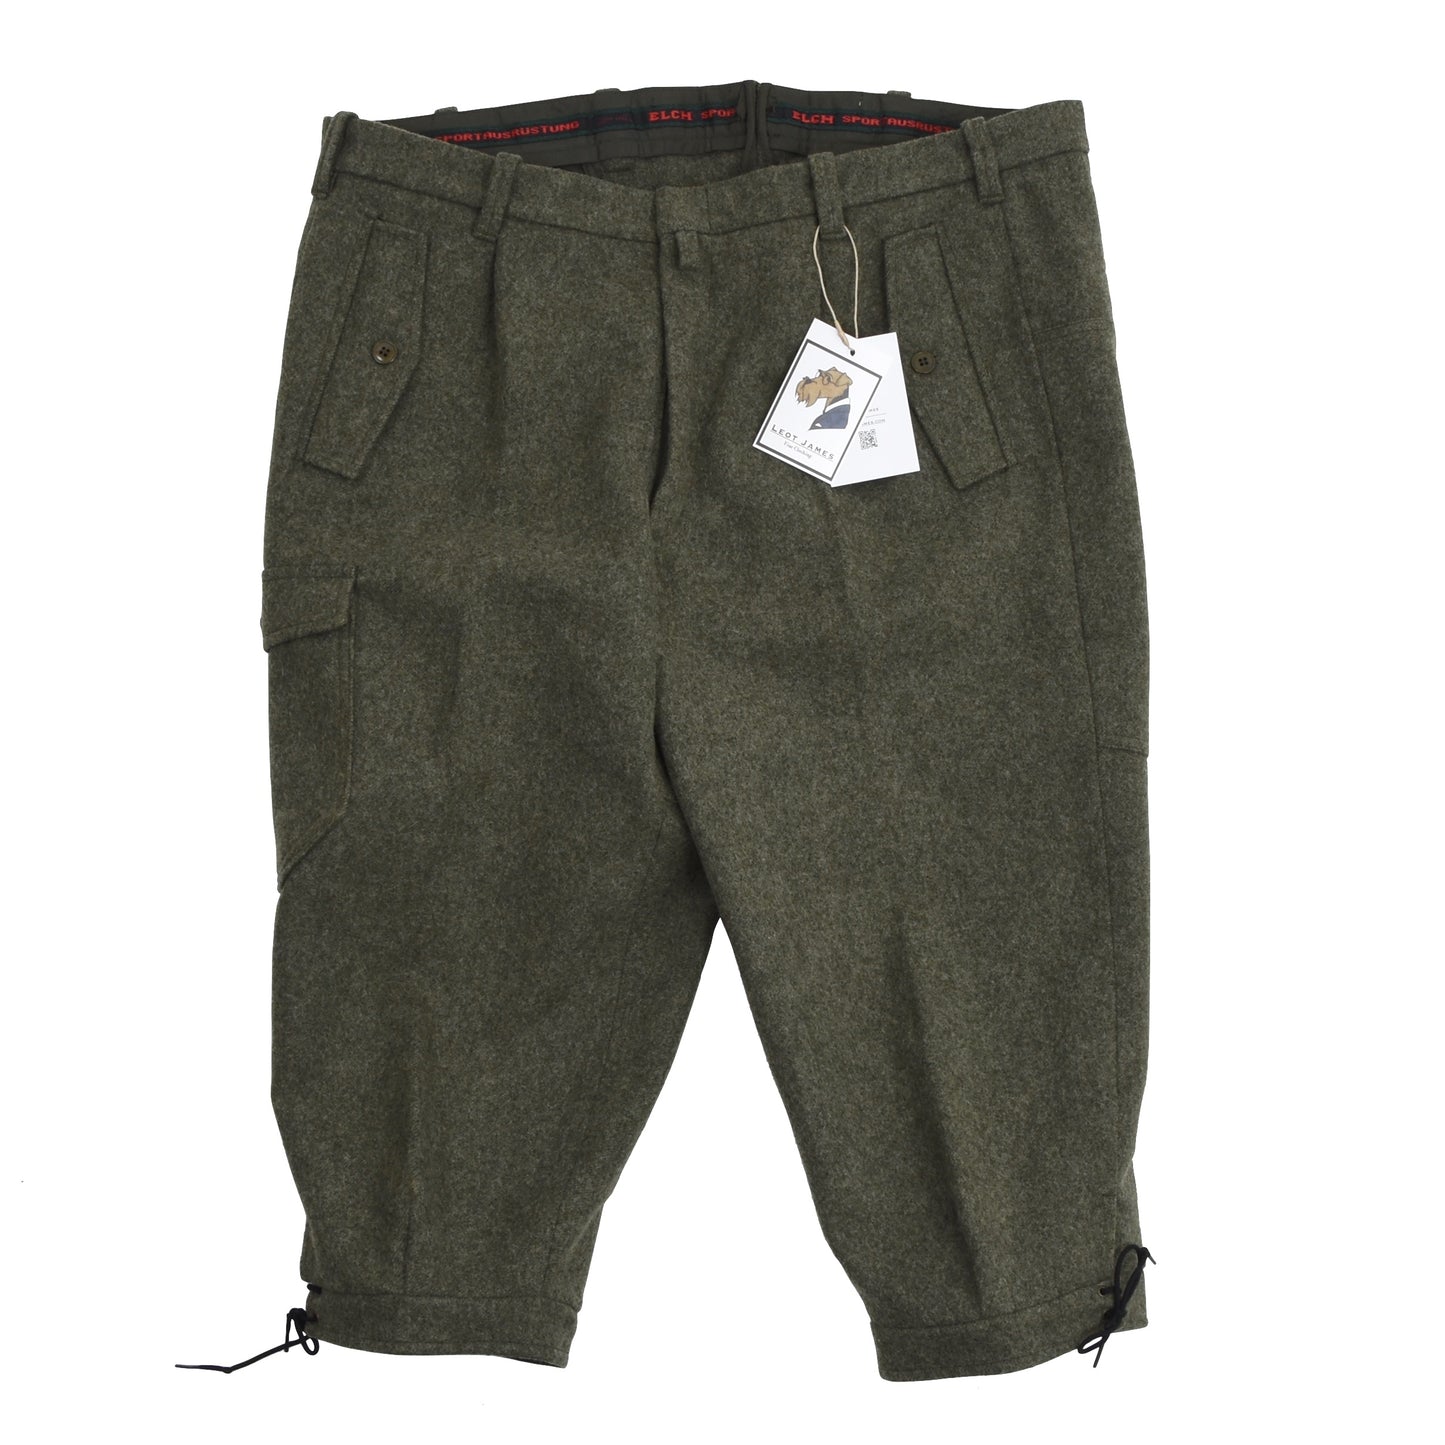 Elch Wool Knickerbockers/Breeks Size 52+ - Green